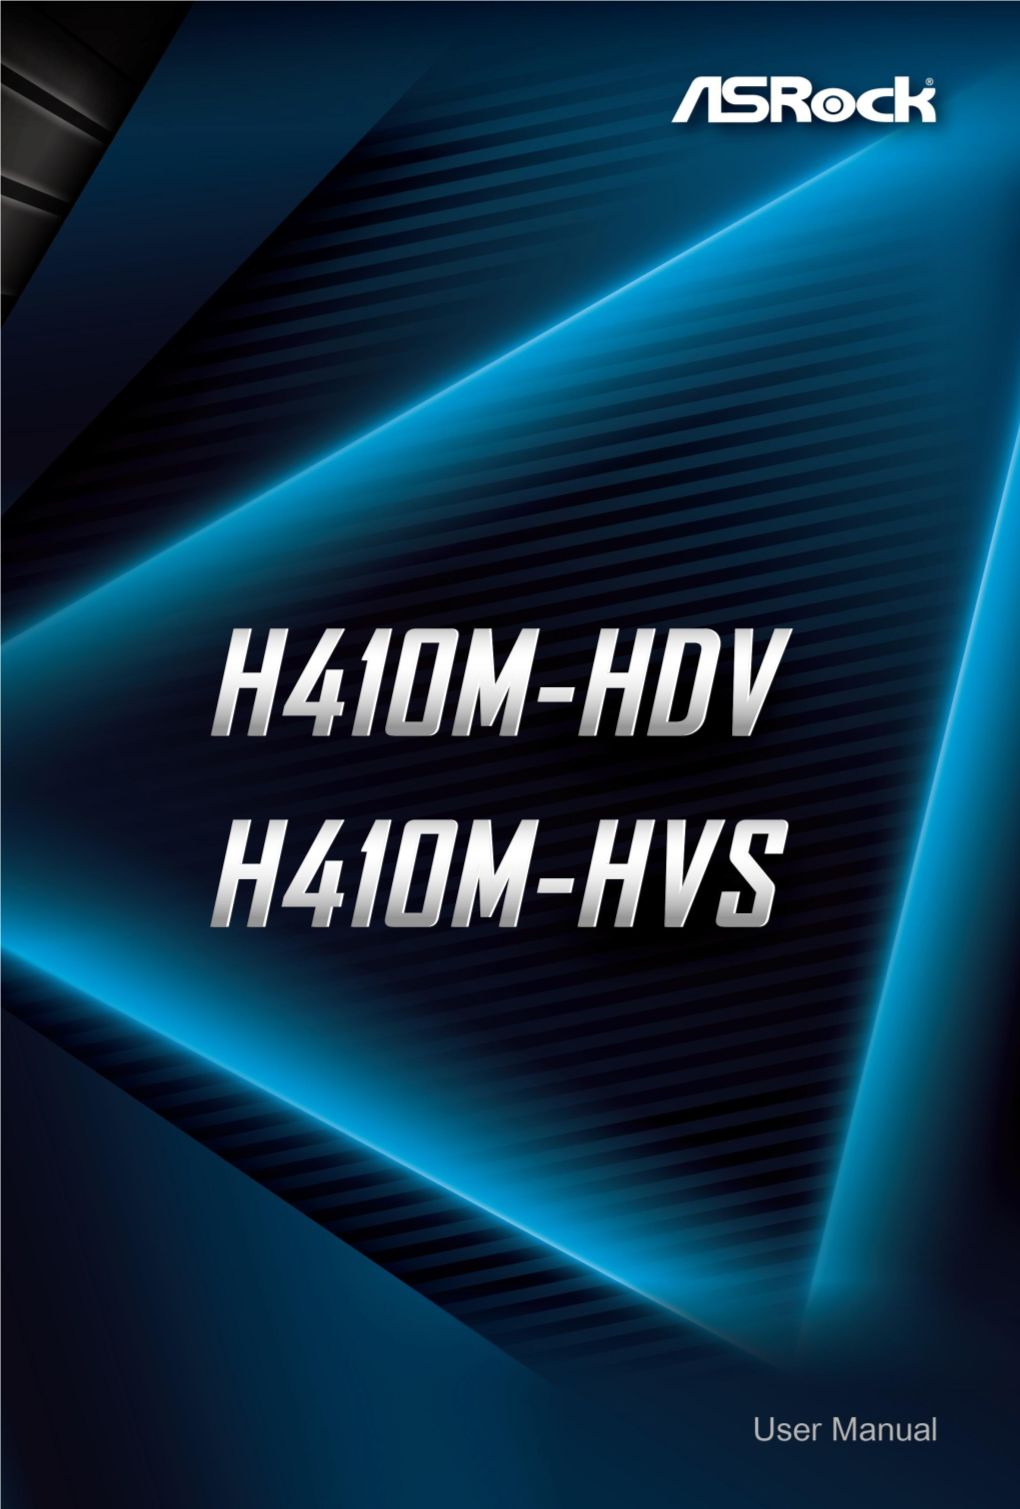 H410M-HDV.Pdf